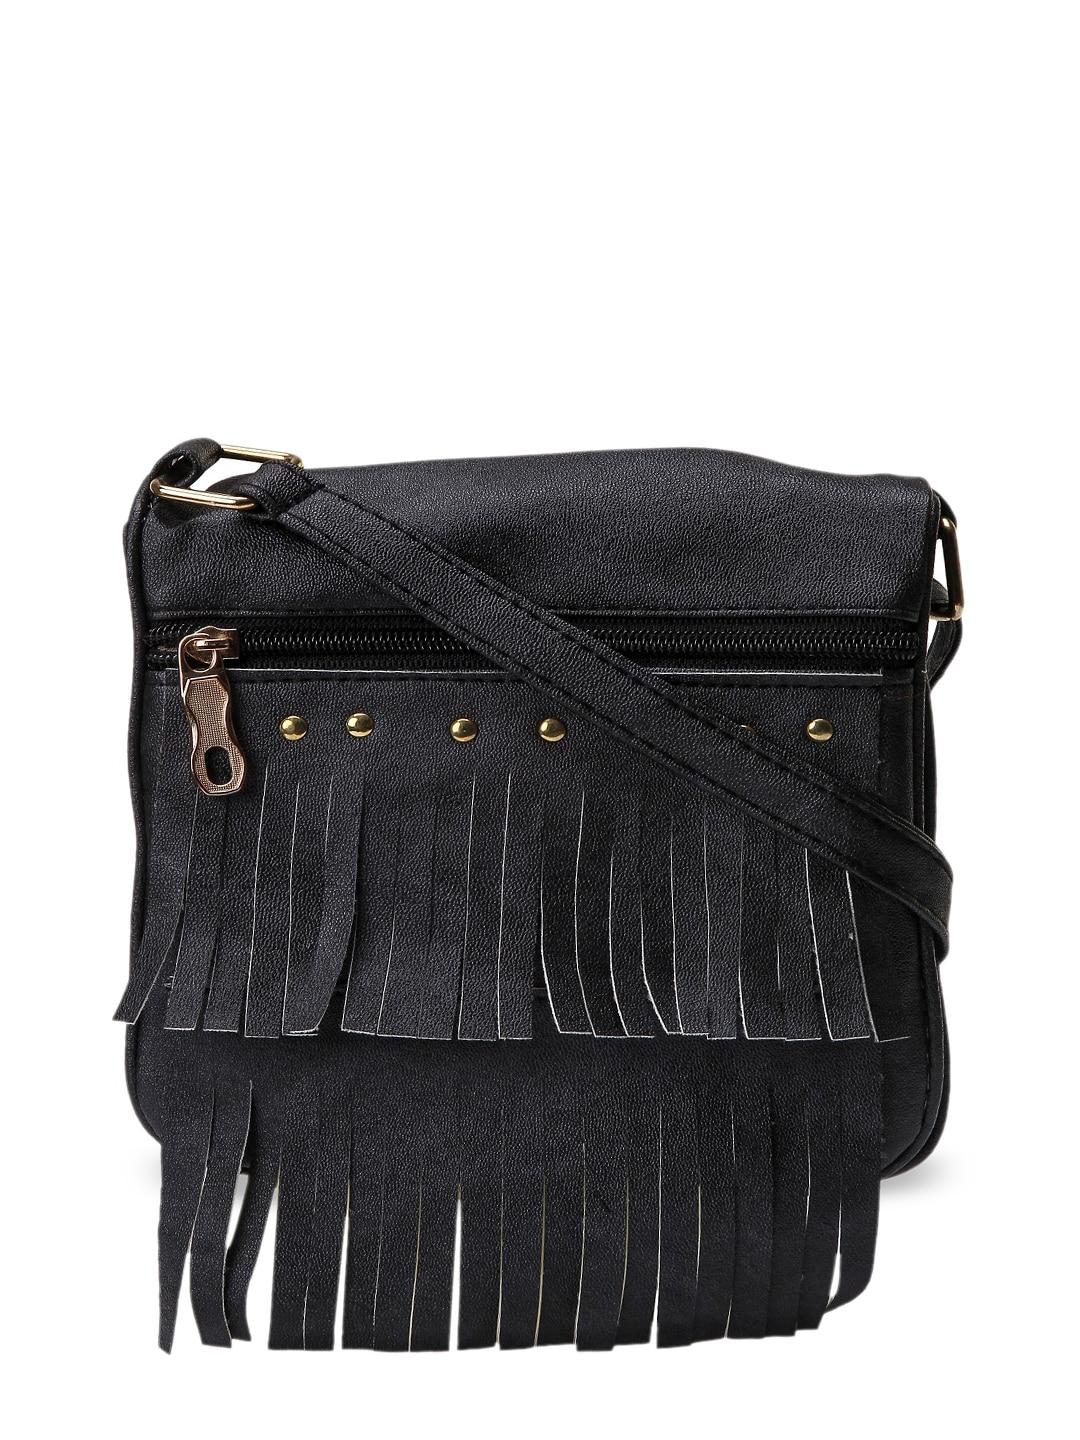 kleio black solid sling bag